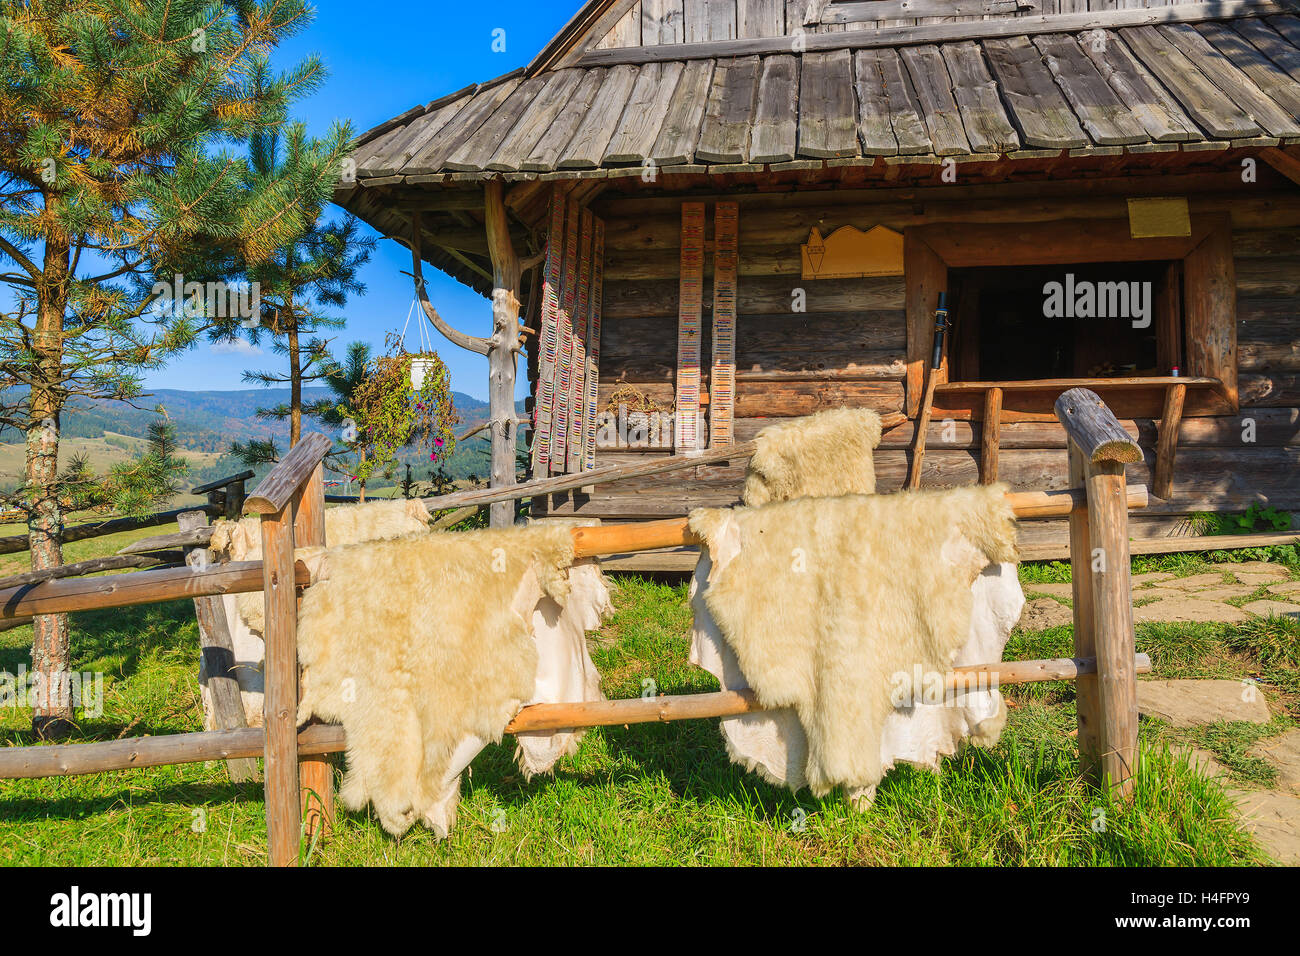 La pelliccia di pecora in vendita appeso alla recinzione di legno nella parte anteriore di una baita di montagna in Pieniny Mountains, Polonia Foto Stock